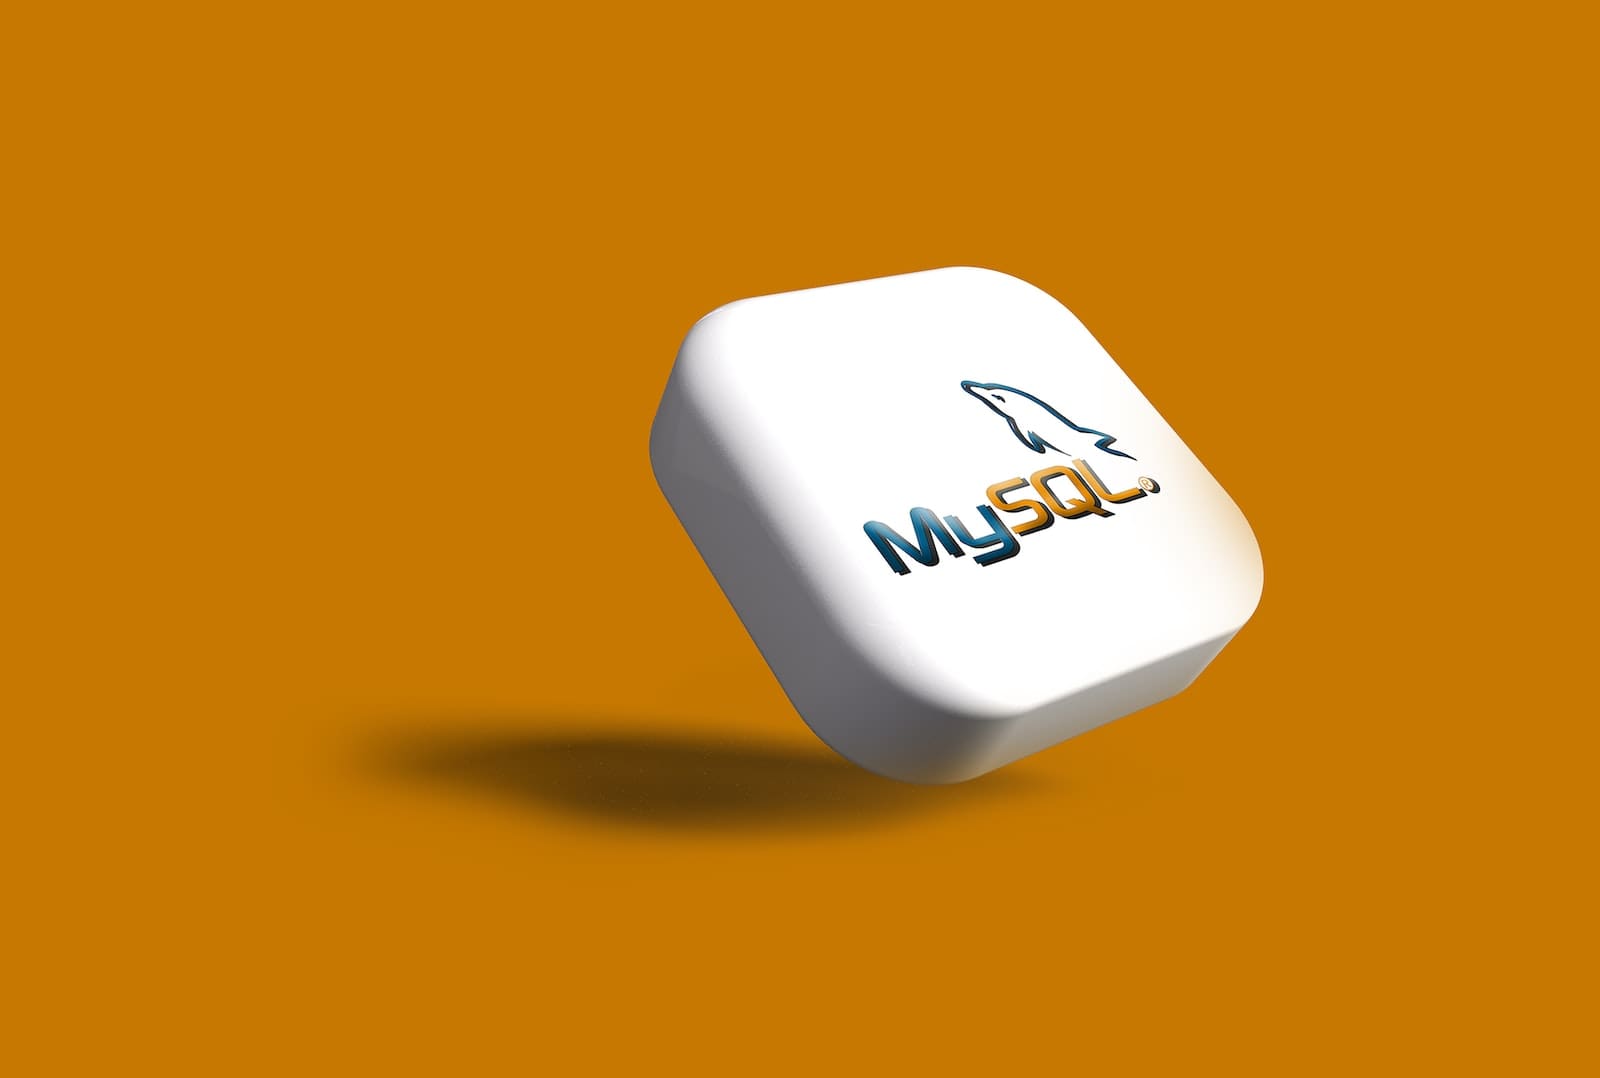 mysql database system